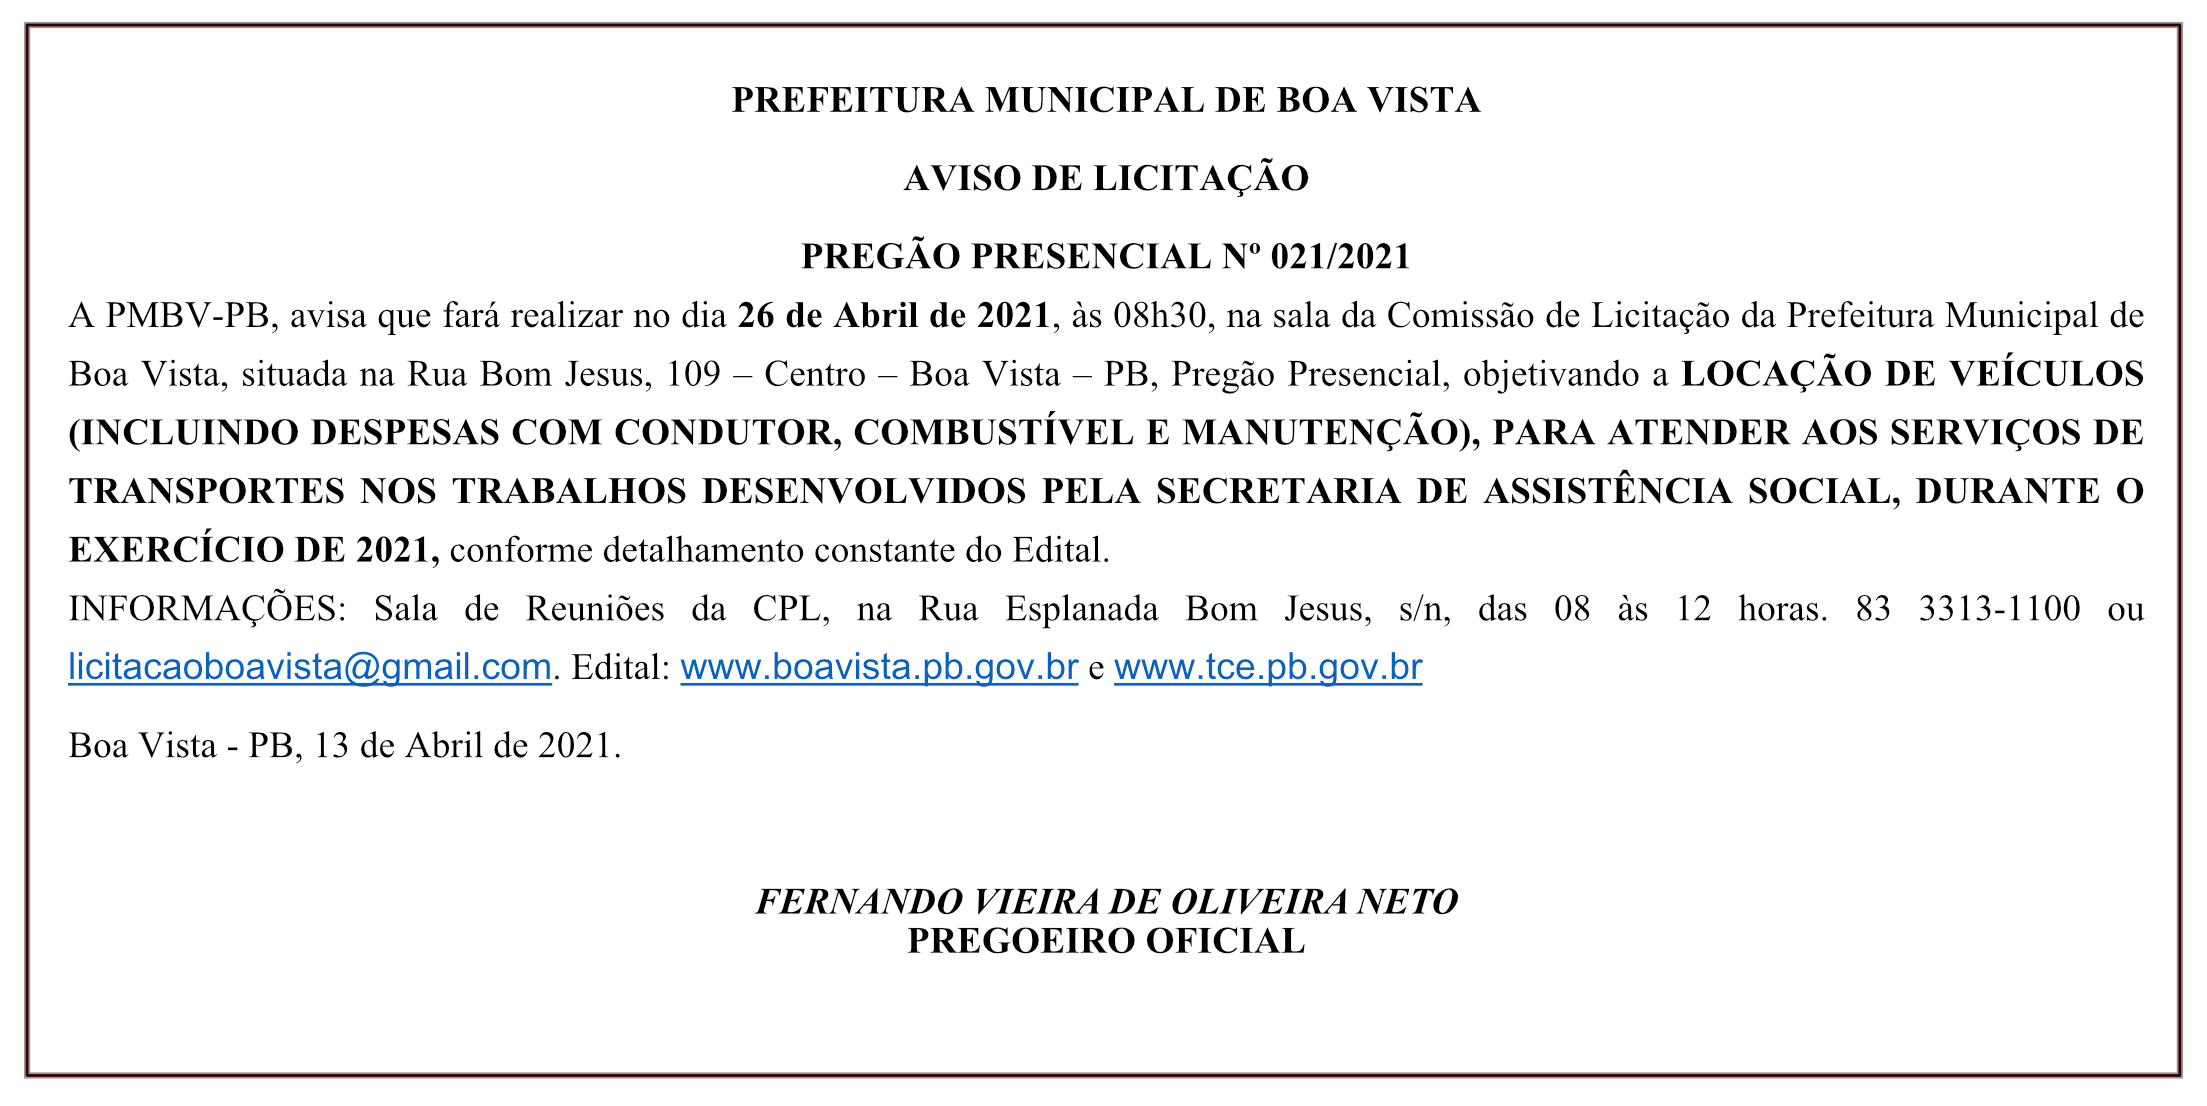 PREFEITURA MUNICIPAL DE BOA VISTA – AVISO DE LICITAÇÃO – PREGÃO PRESENCIAL Nº 021/2021